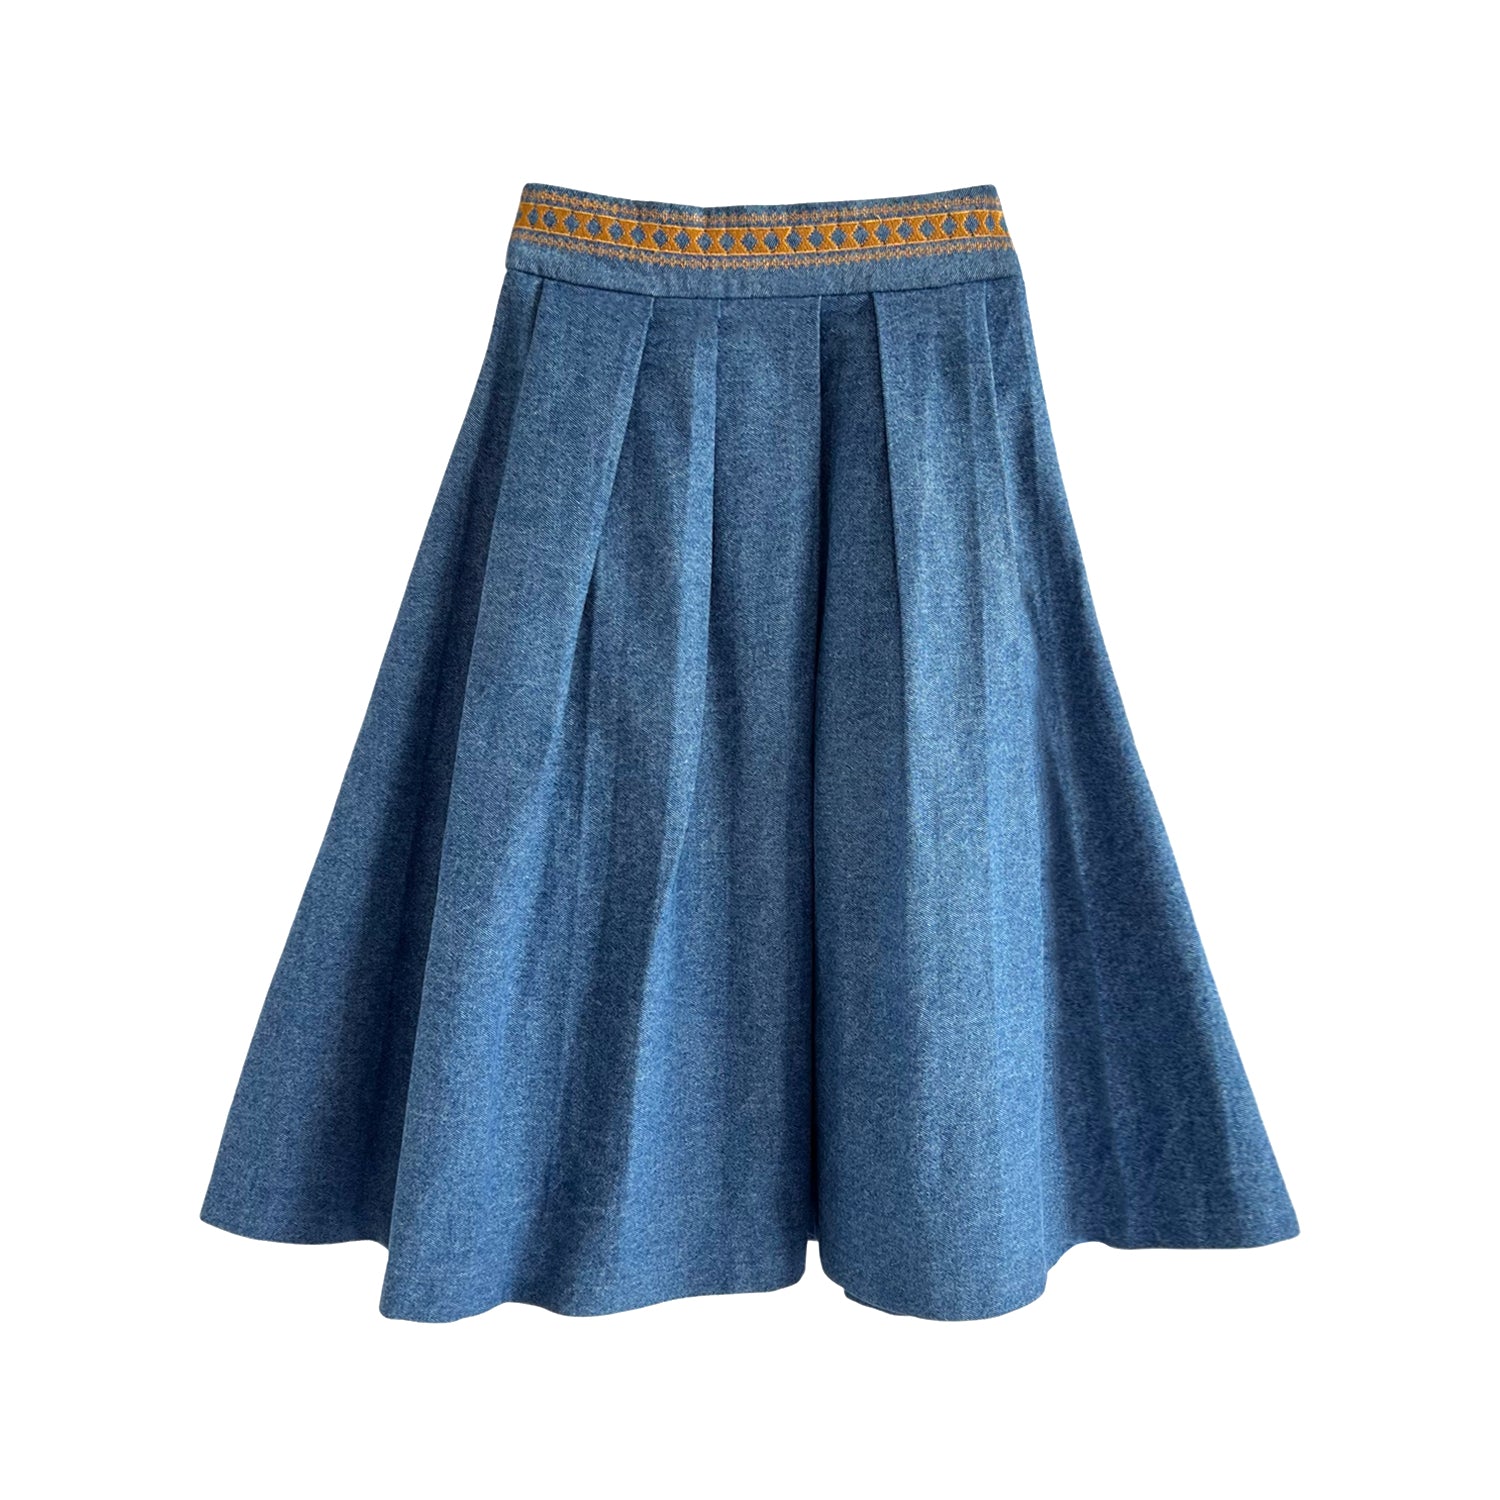 Embroidered Full Midi Skirt in Blue Denim